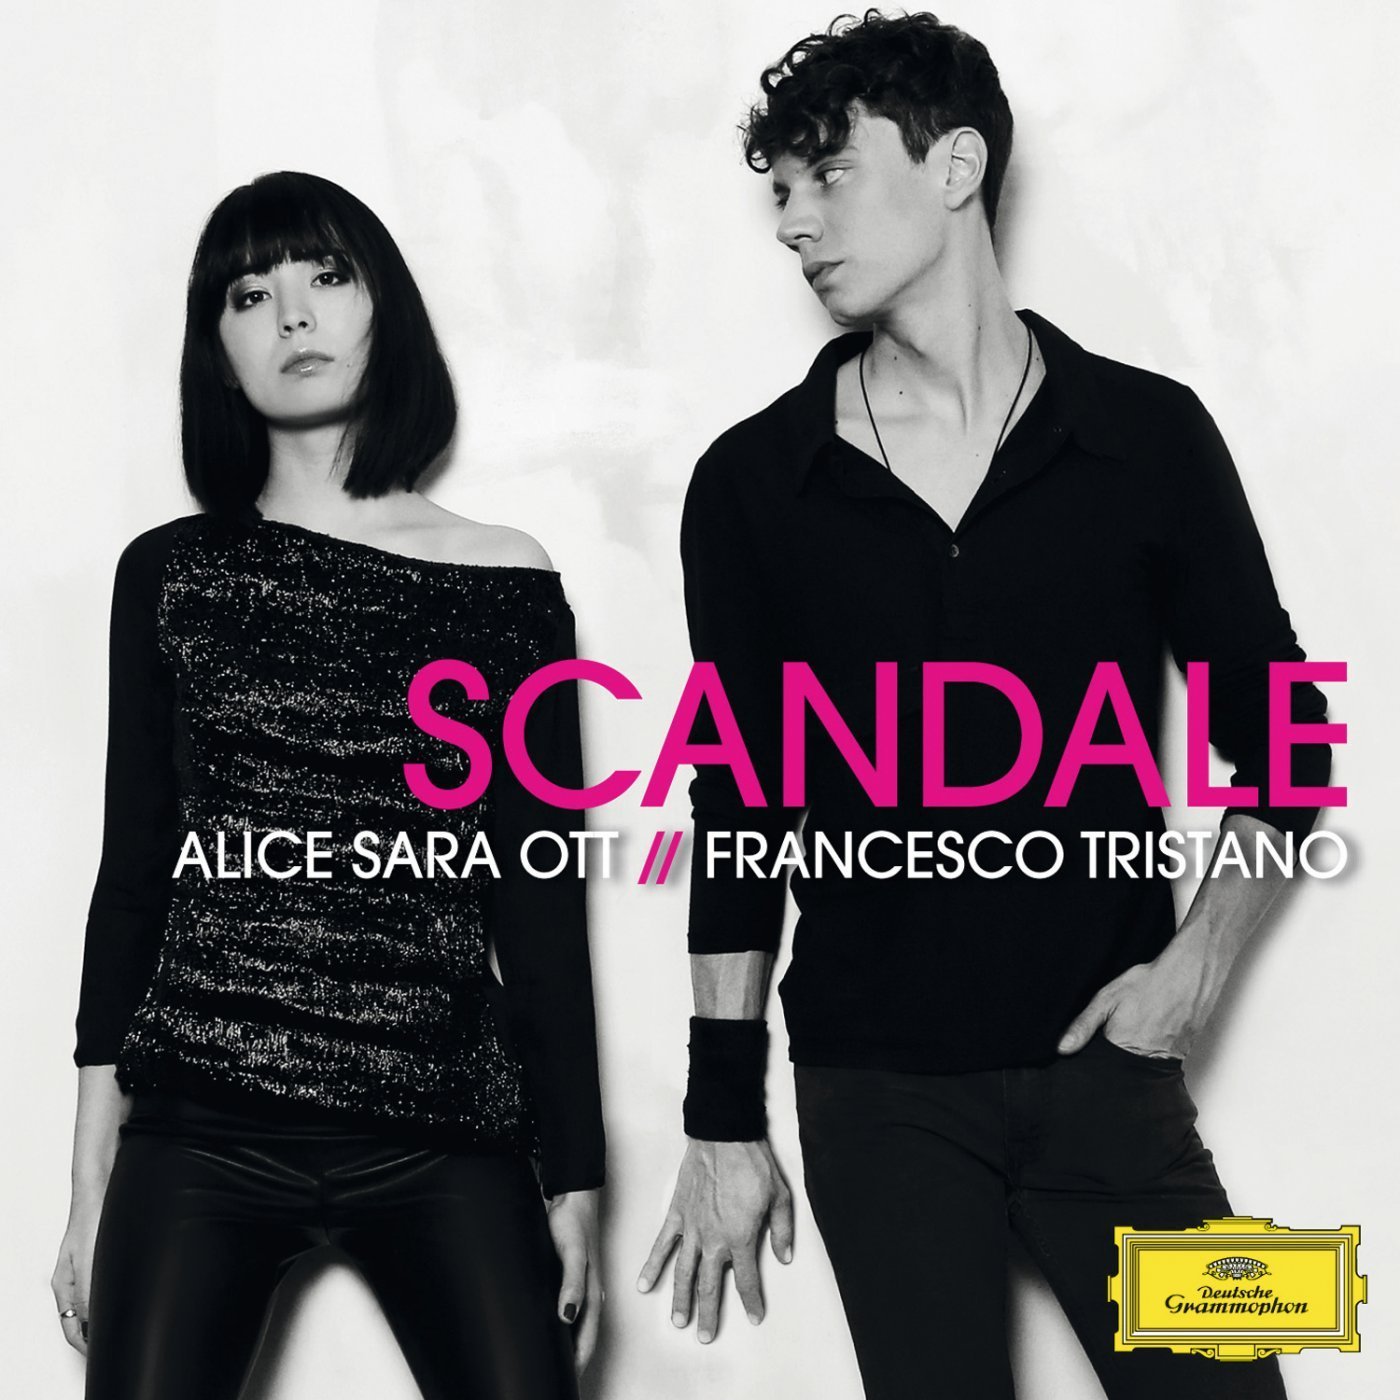 Alice Sara Ott & Francesco Tristano - Scandale (2014) [HighResAudio FLAC 24bit/96kHz]